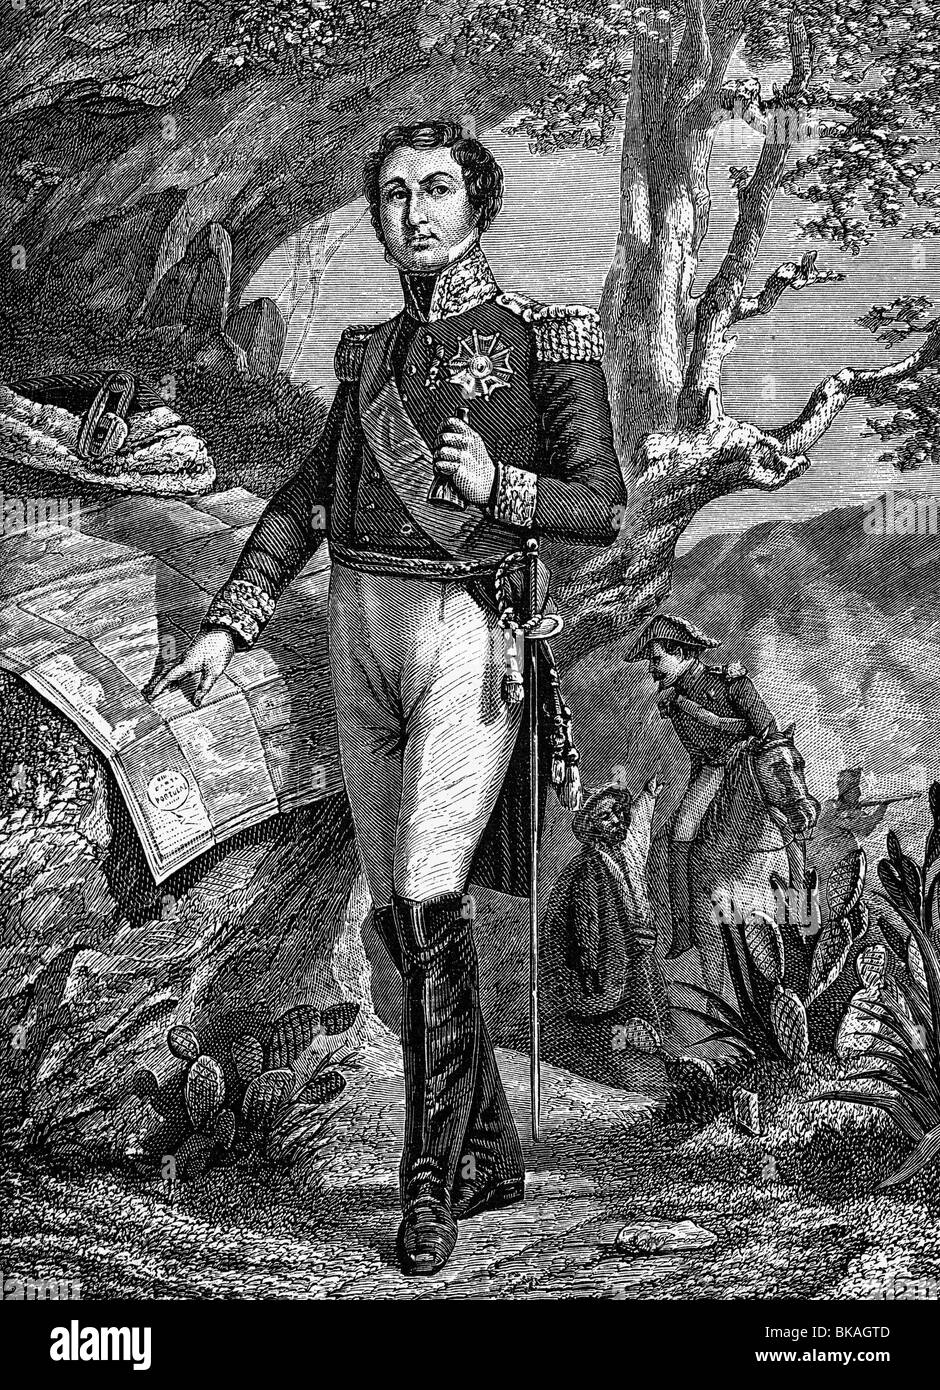 Soult, Nicolas-Jean-de-Dieu, 29.3.1769 - 26.11.1851, général et politicien français, pleine longueur, gravure sur bois, XIXe siècle, Banque D'Images